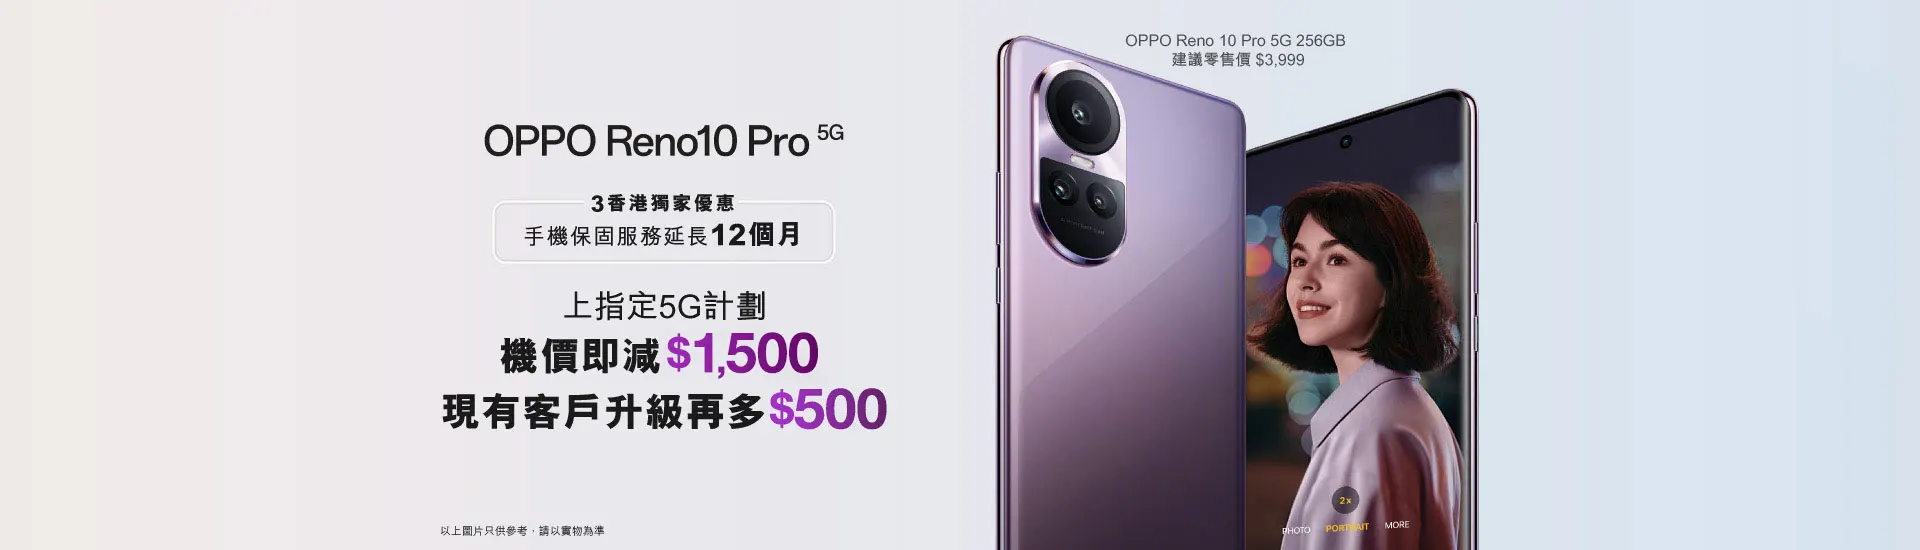 OPPO Reno 10 Pro 5G 產品規格